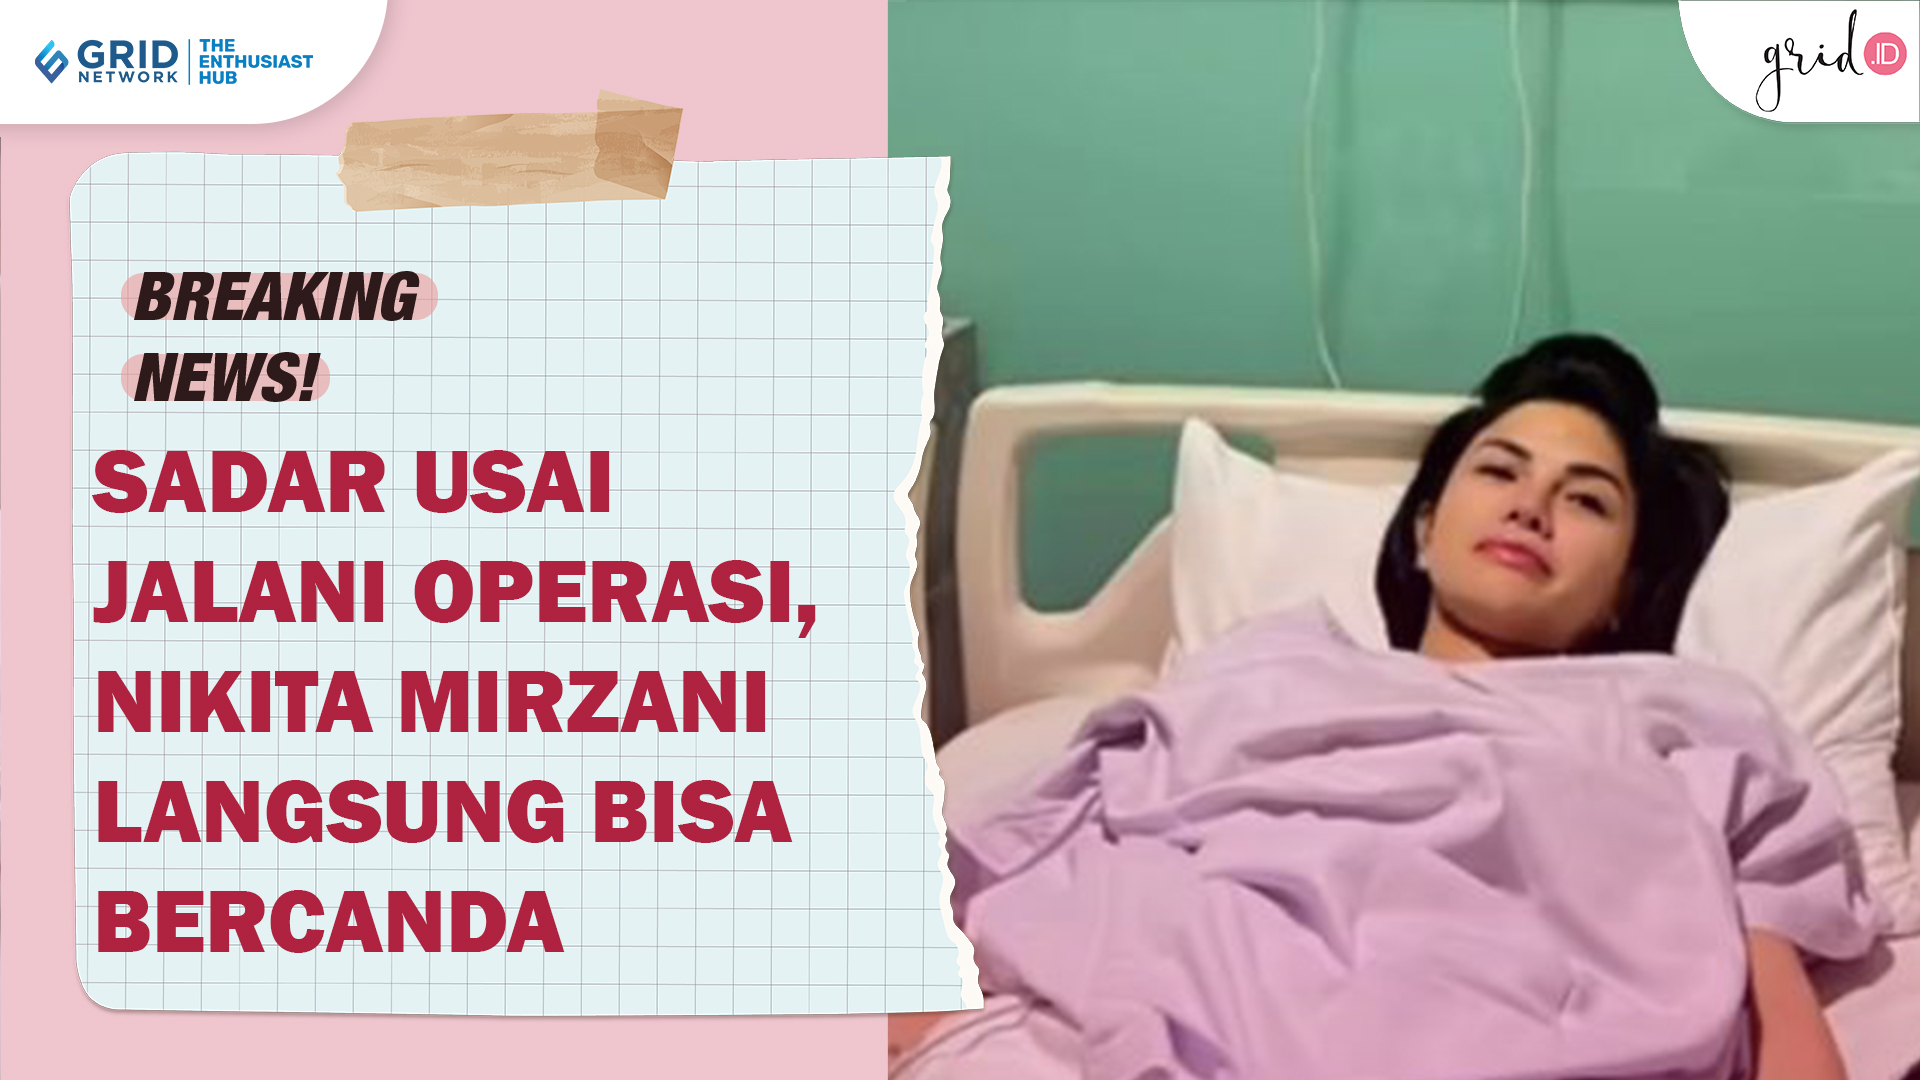 Selesai Operasi, Nikita Mirzani Sudah Langsung Sadar Sampai Bisa Bercanda Kembali